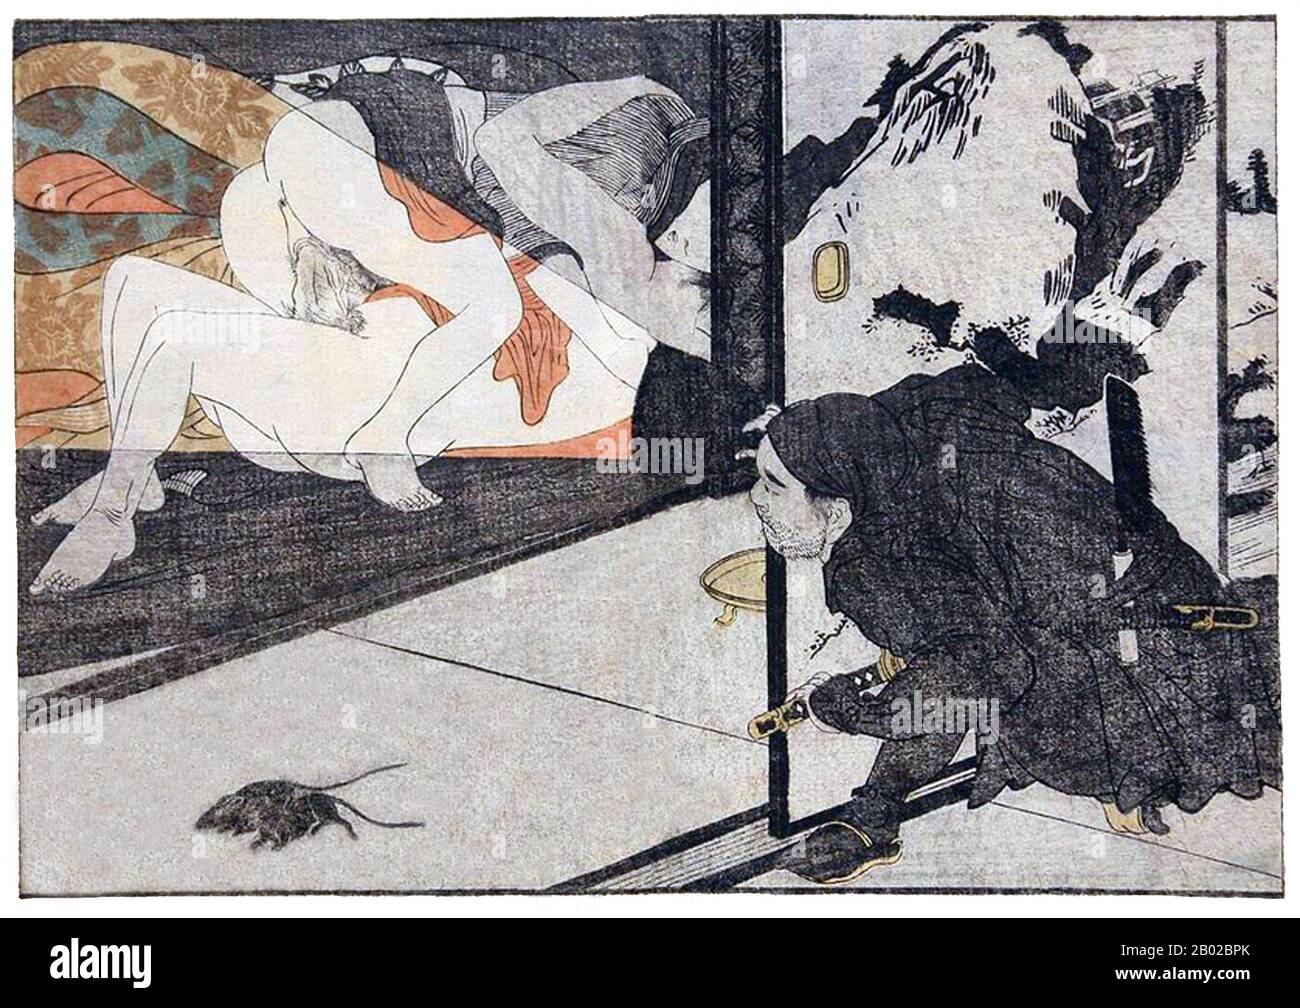 японская эротика рисованная фото 68